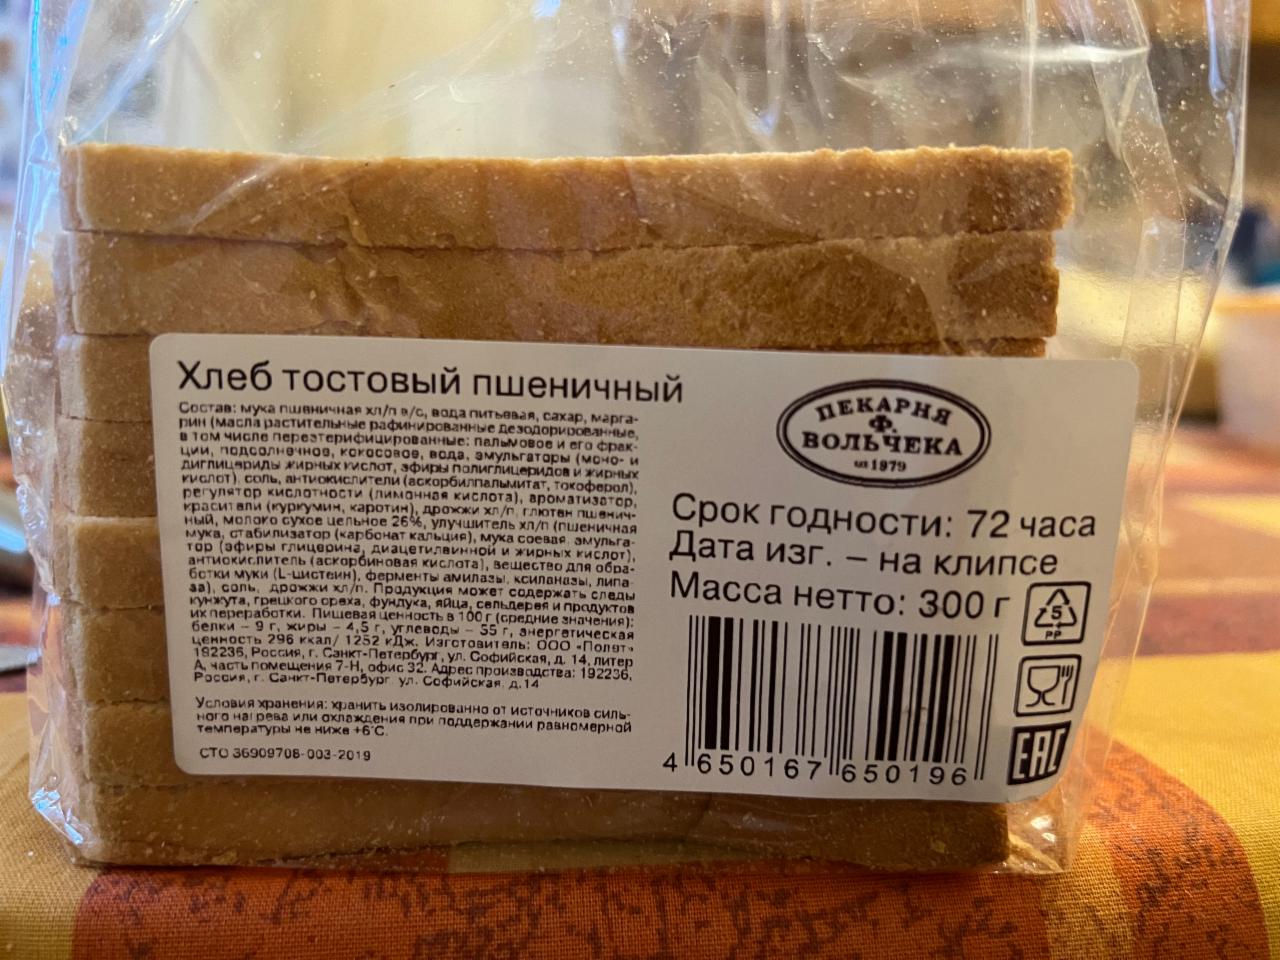 Хлеб тостовый калорийность. Хлеб тостовый Вольчека. Хлеб бутербродный. Хлеб тостовый отрубной. Пекарня Хлебушек.